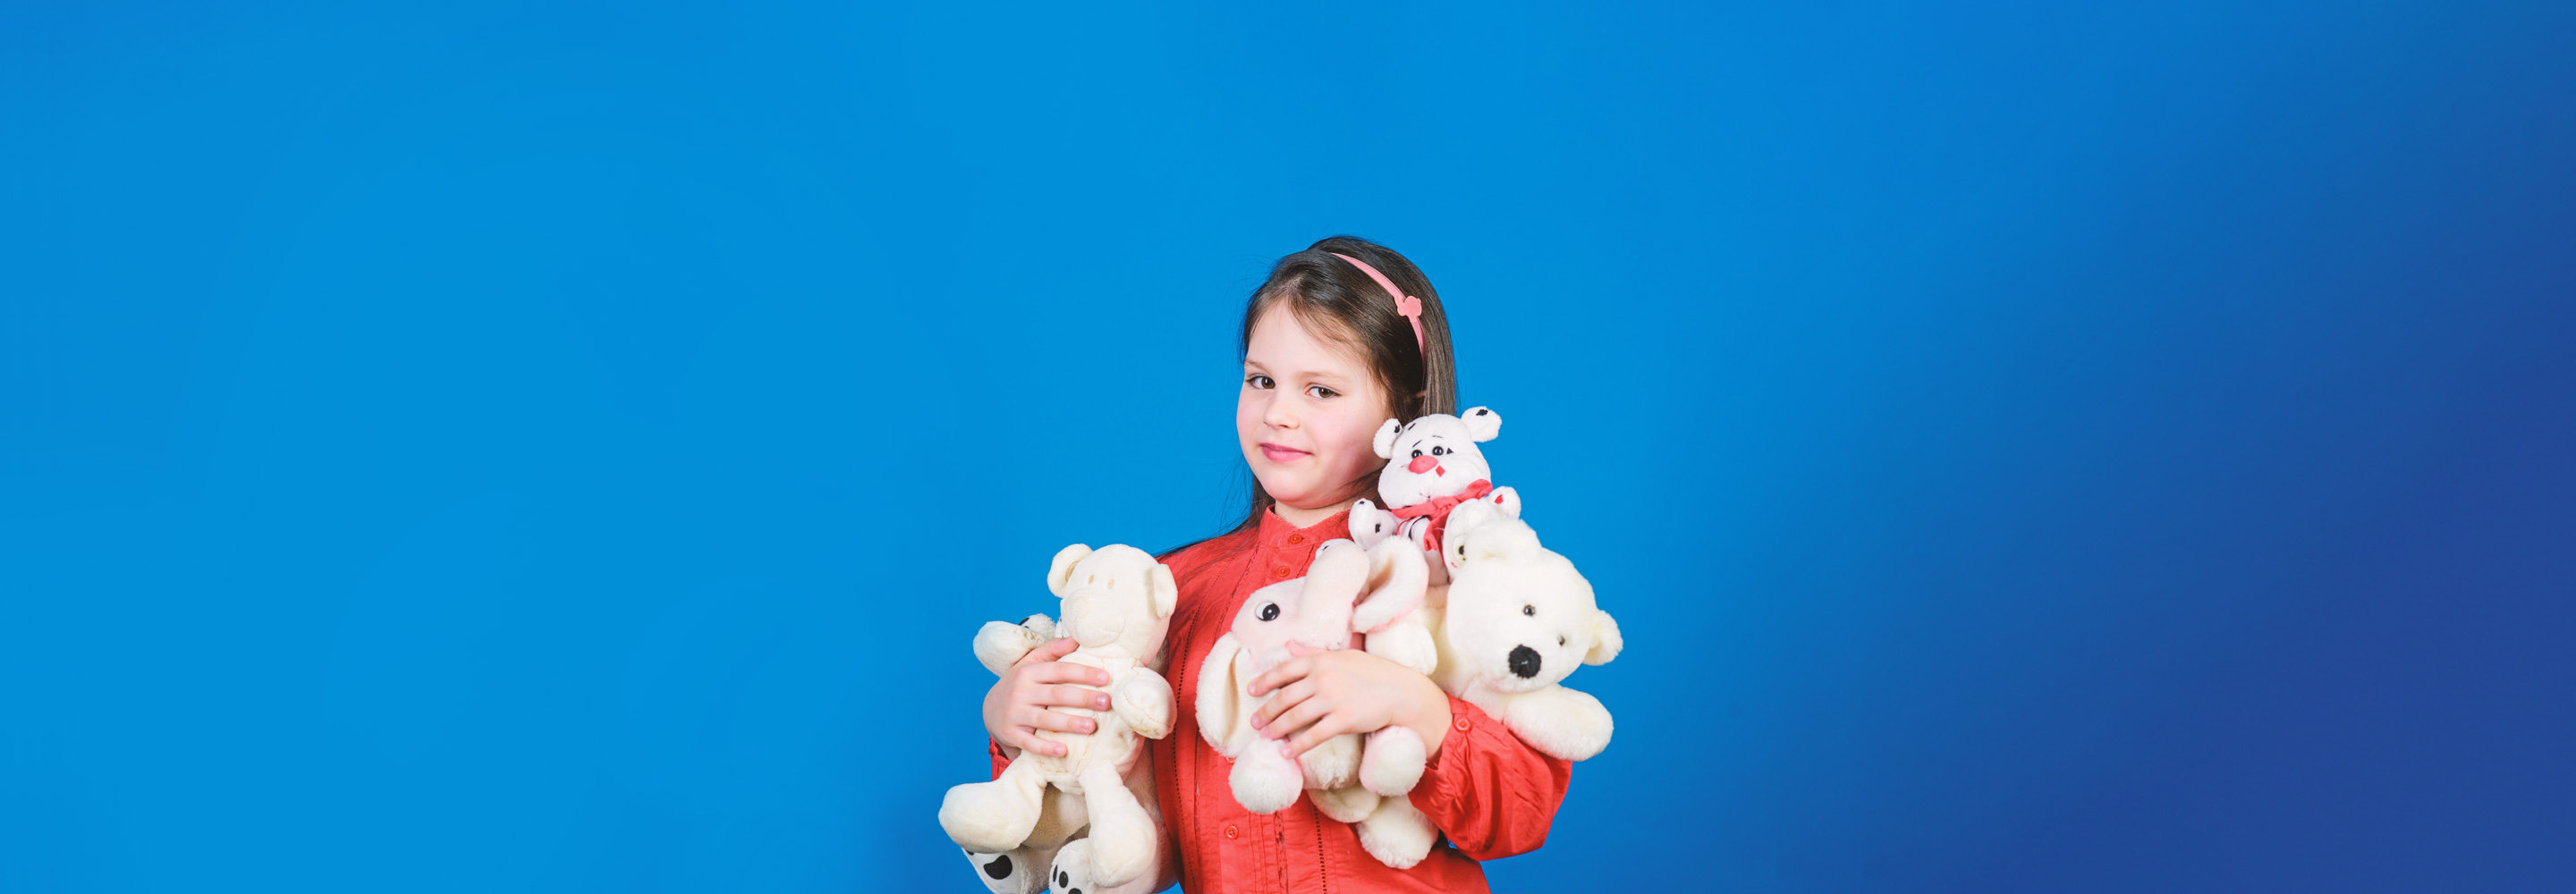 5 признаков безопасной детской игрушки